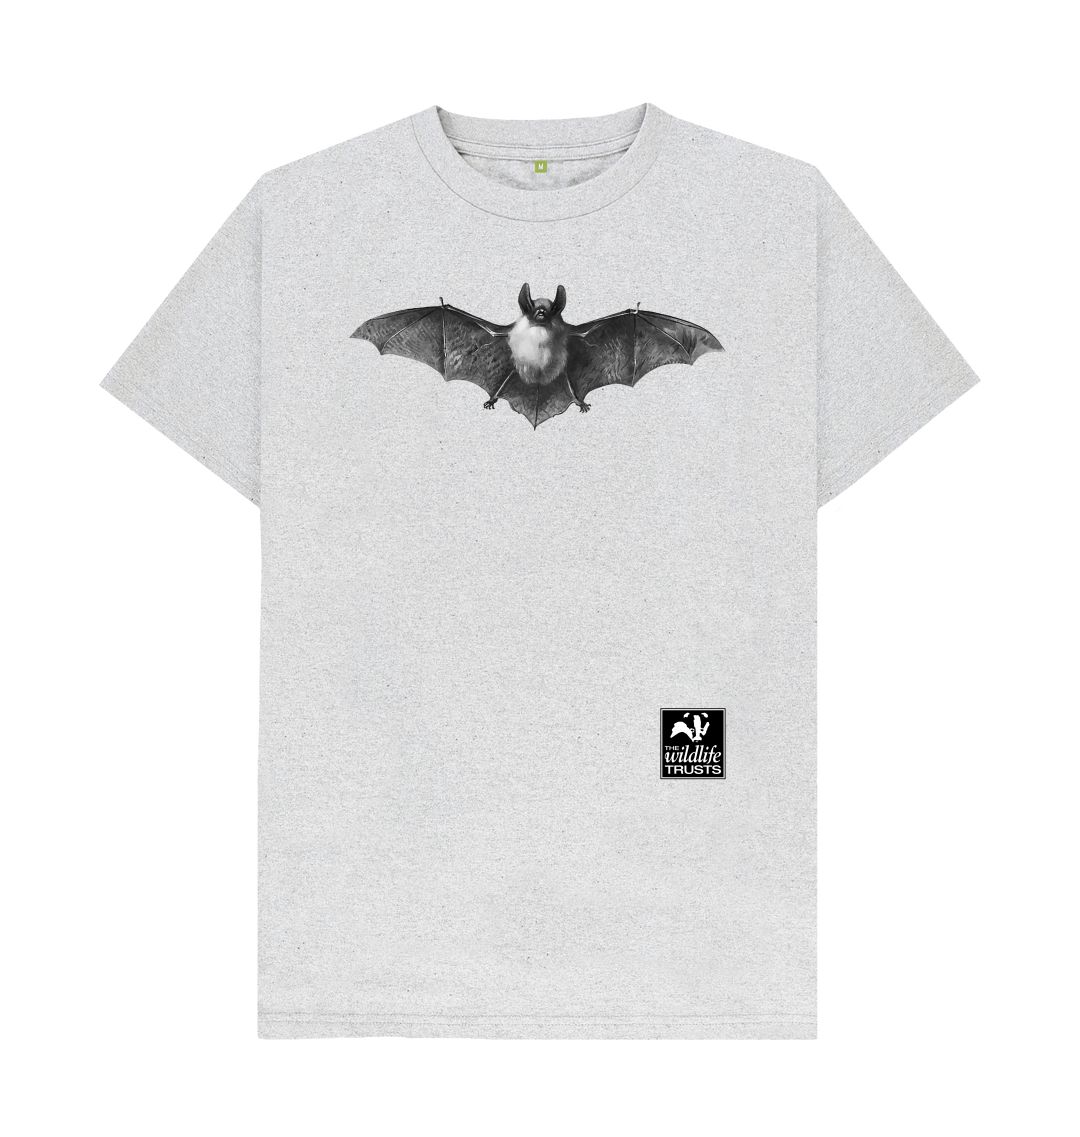 Grey Bat men's t-shirt